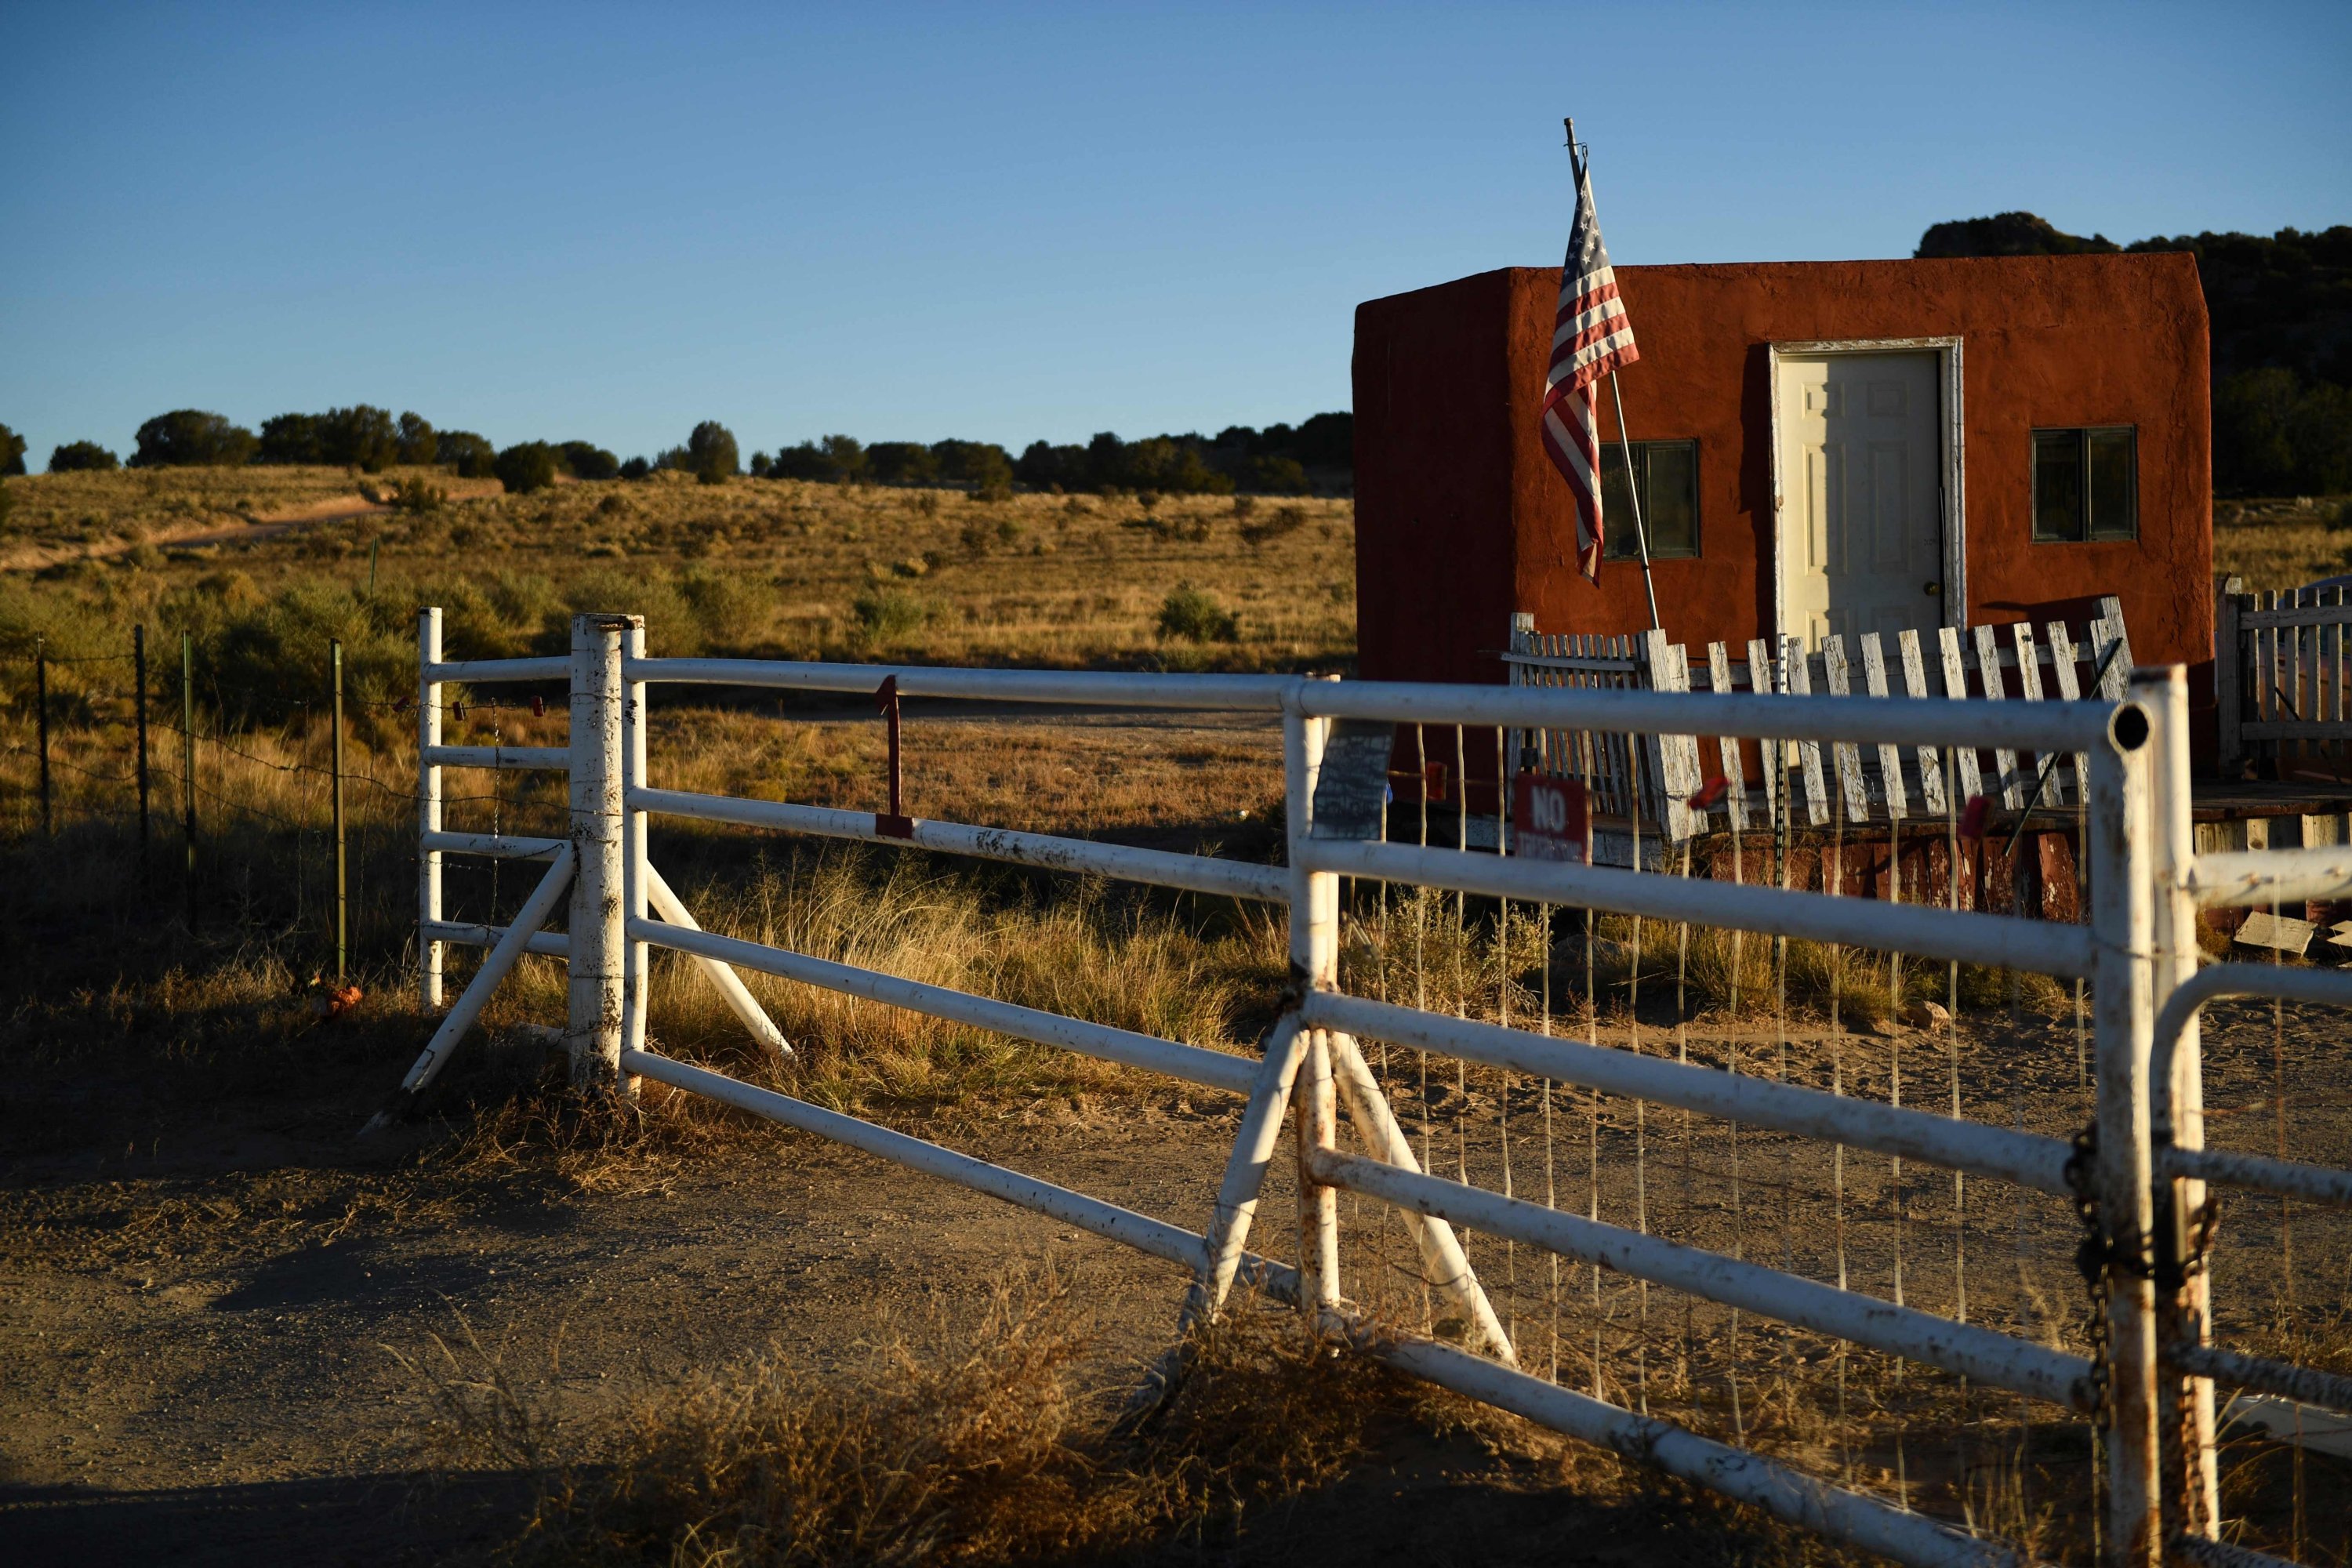 File foto ini menunjukkan pintu masuk ke Bonanza Creek Ranch tempat film 